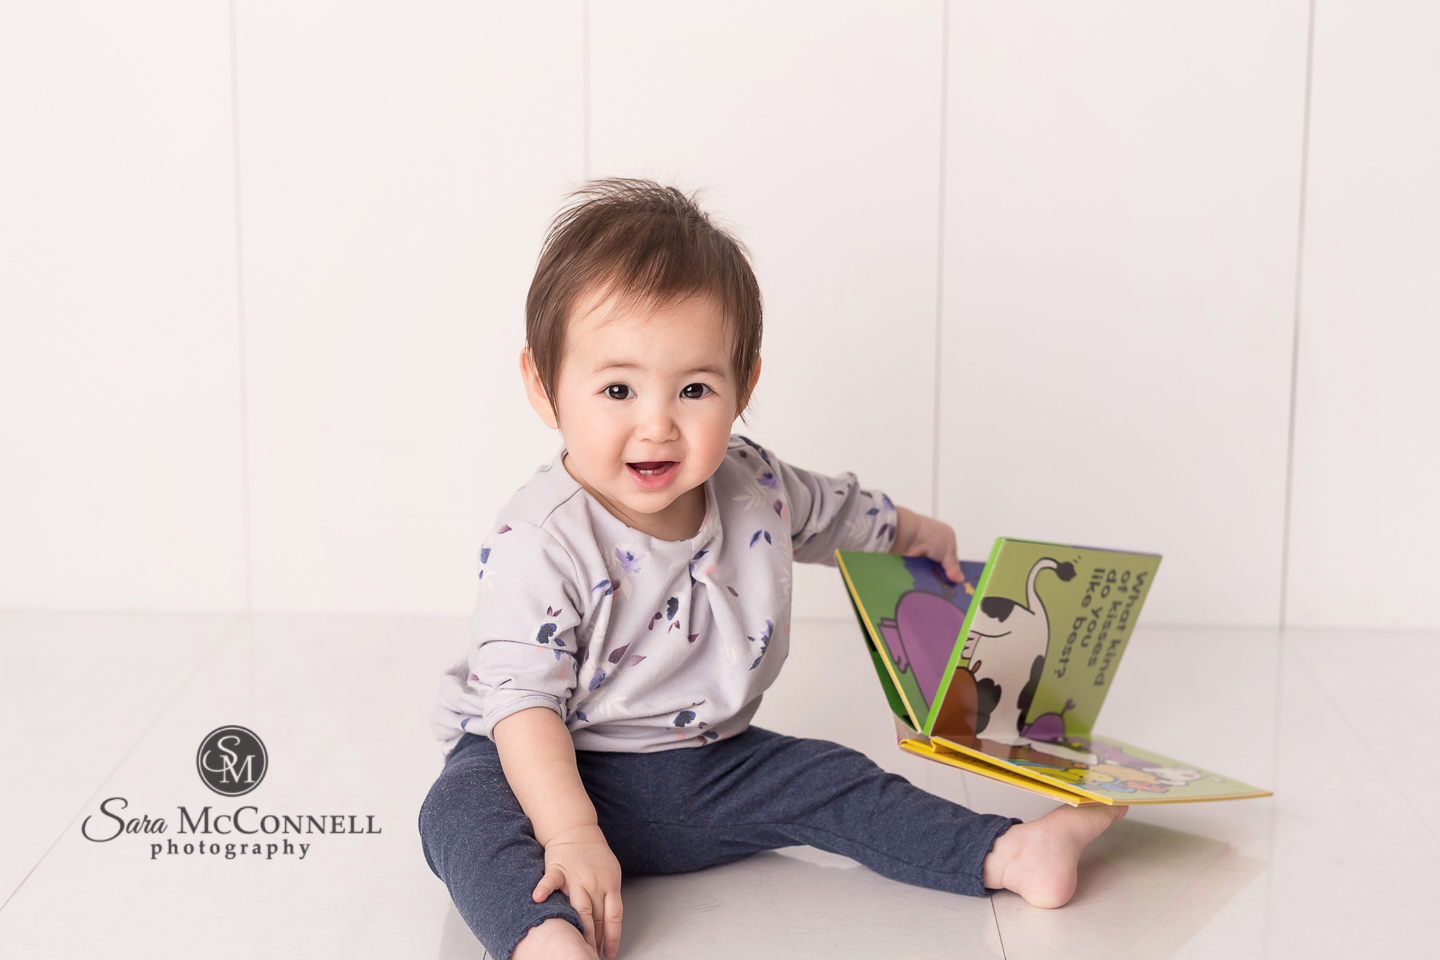 Ottawa Baby Photographer | Mischief, determination and intelligence